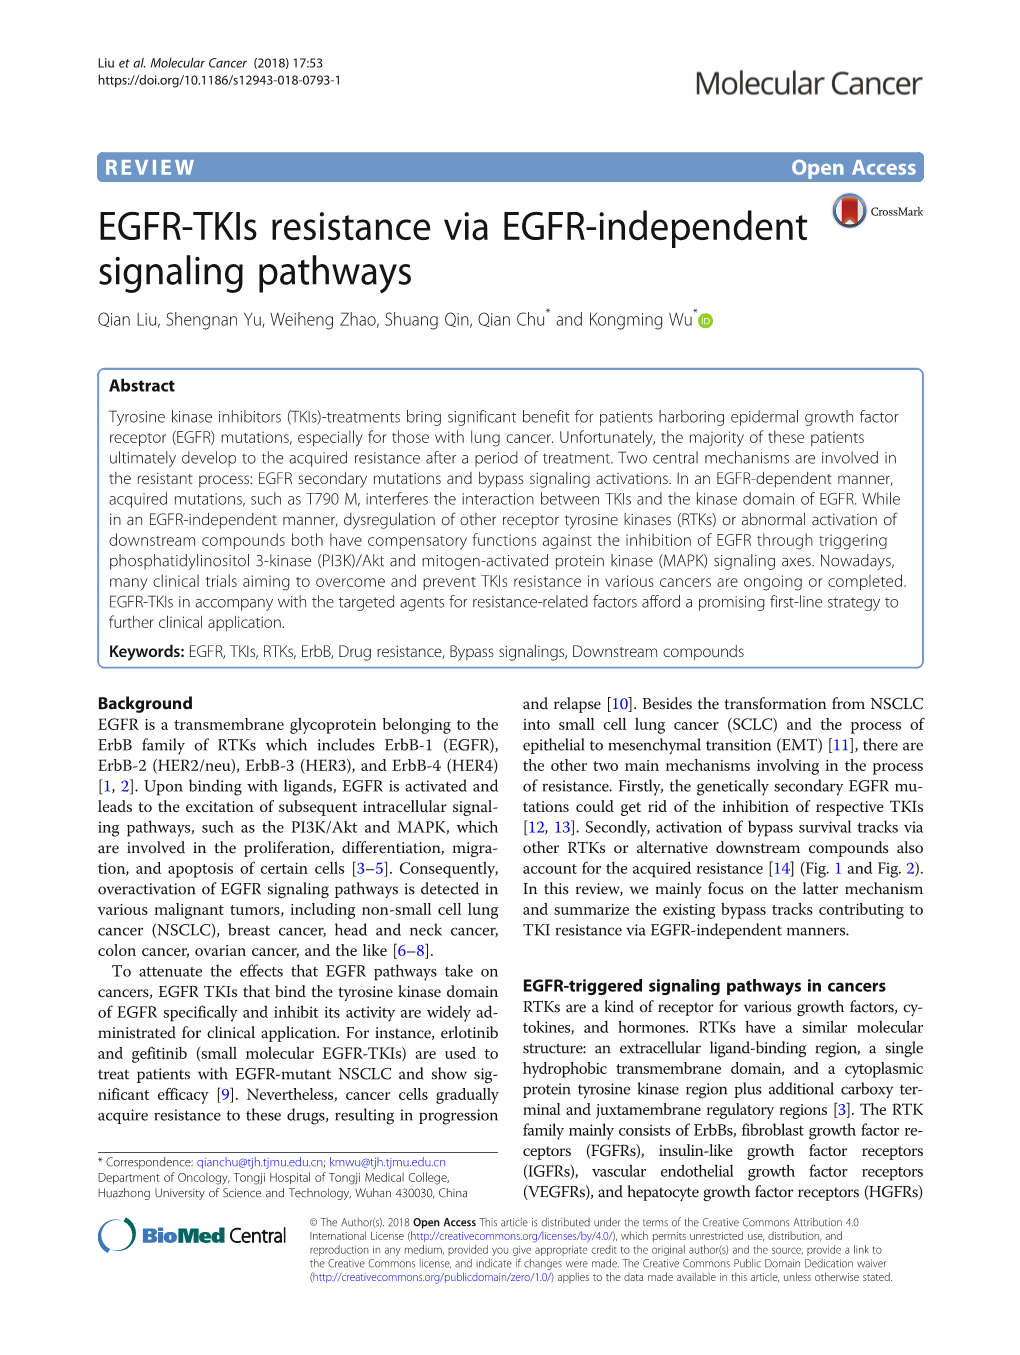 EGFR-Tkis Resistance Via EGFR-Independent Signaling Pathways Qian Liu, Shengnan Yu, Weiheng Zhao, Shuang Qin, Qian Chu* and Kongming Wu*